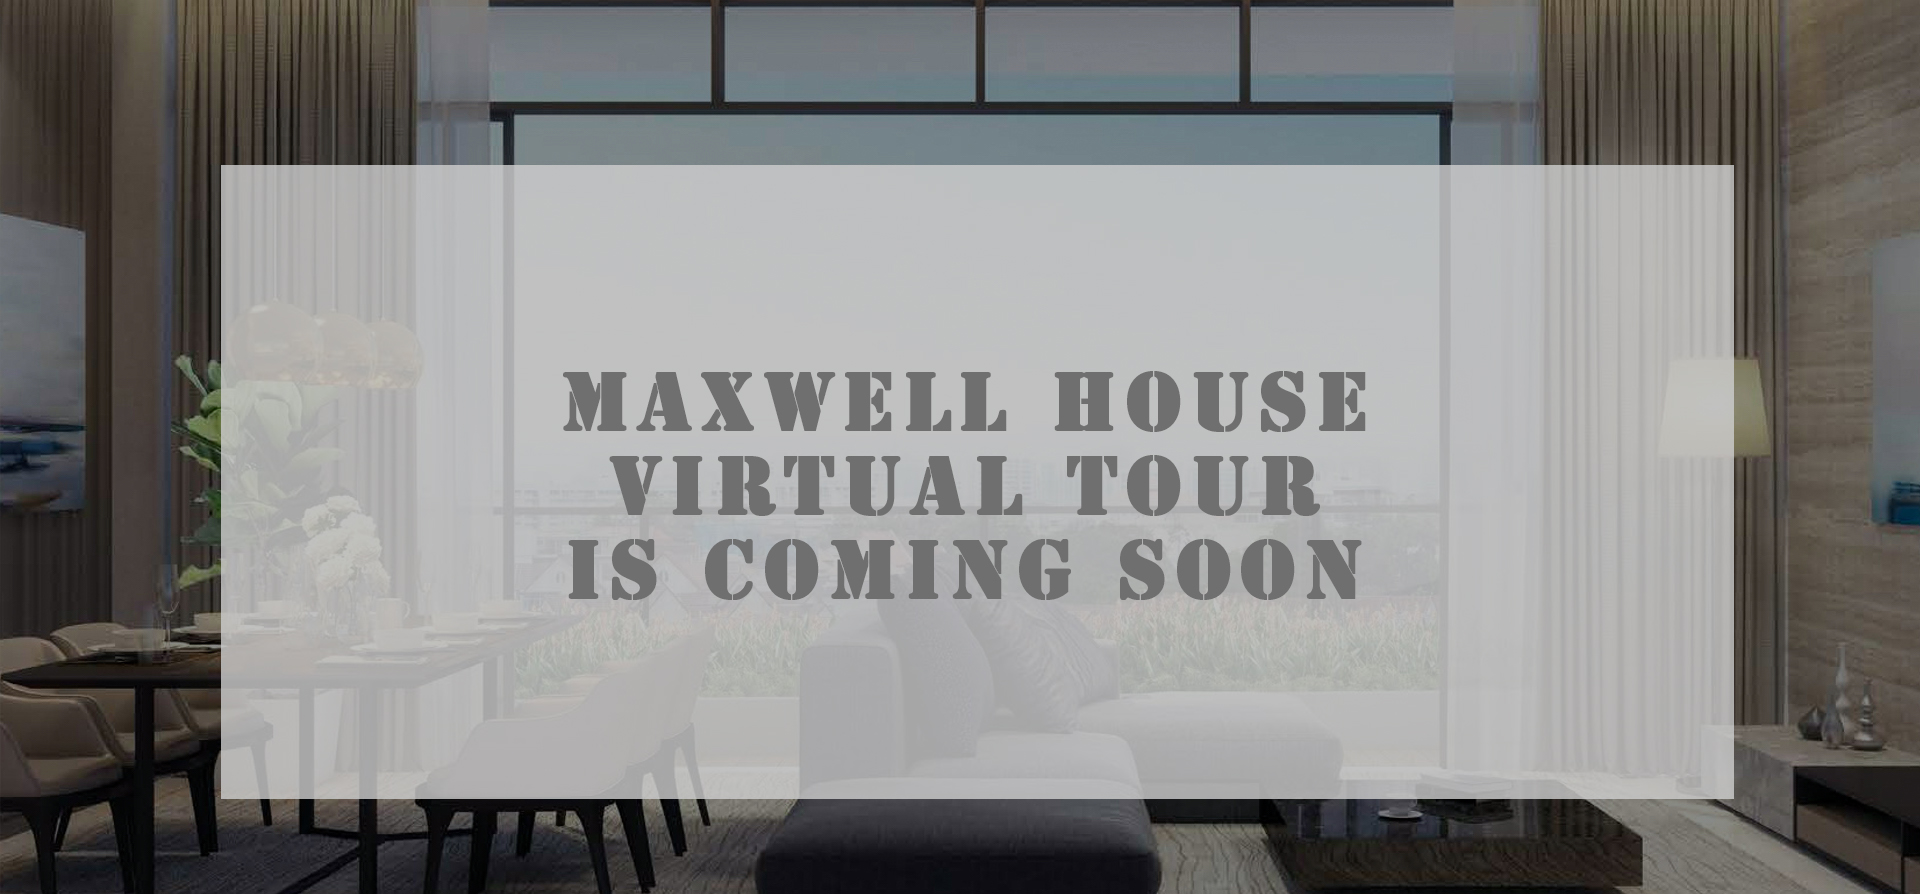 Maxwell-house-virtual-tour